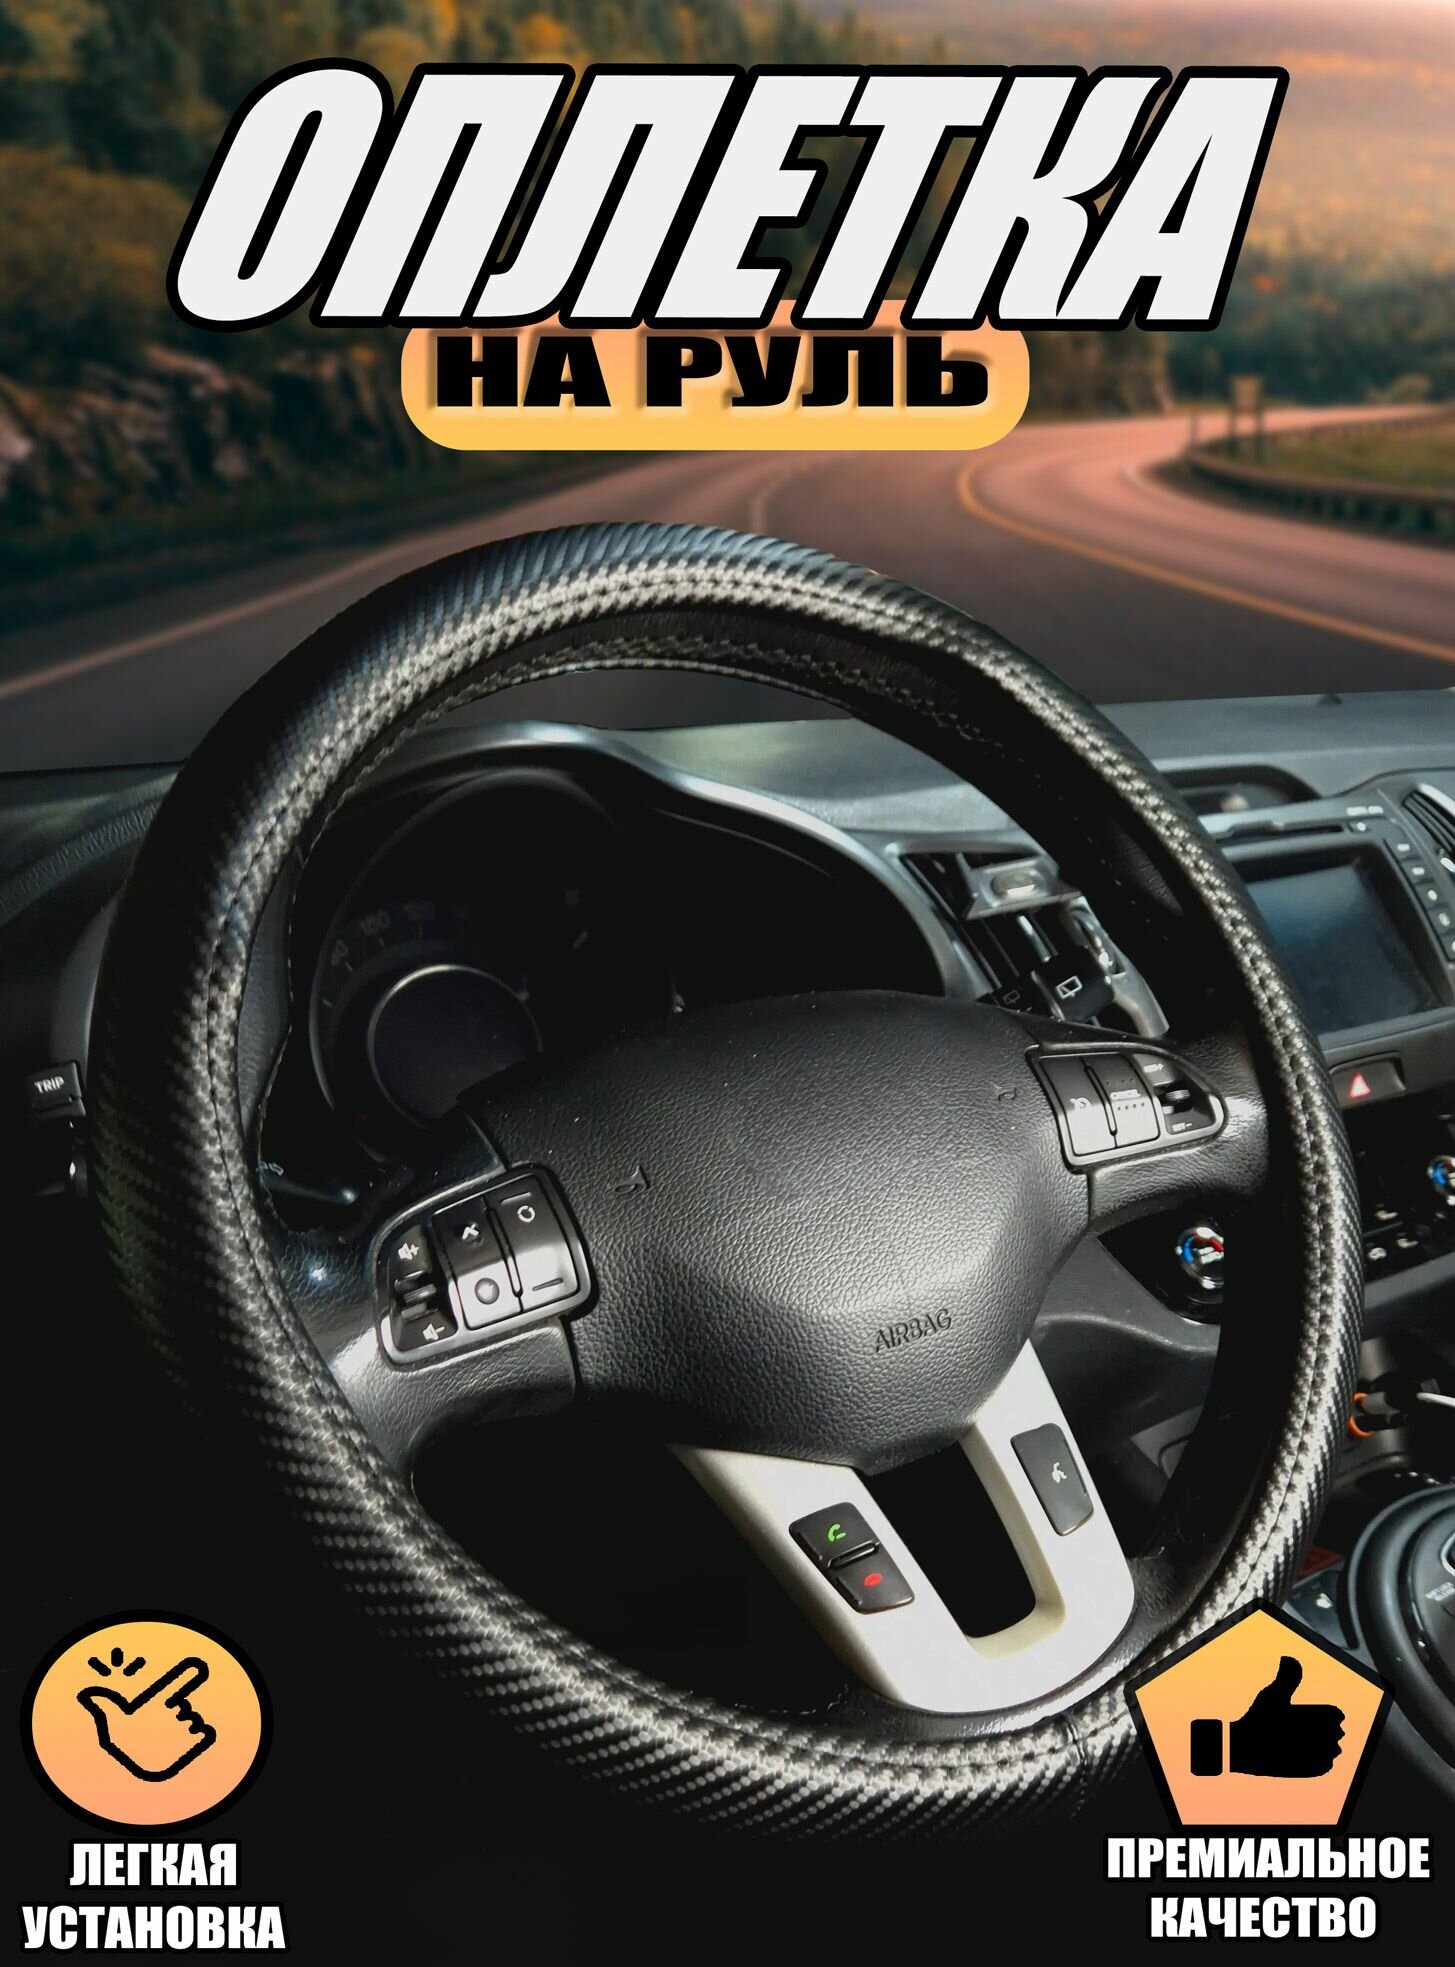 Оплетка, чехол (накидка) на руль Шевроле Нива (2002 - 2009) внедорожник 5 дверей / Chevrolet Niva, карбон, Черный